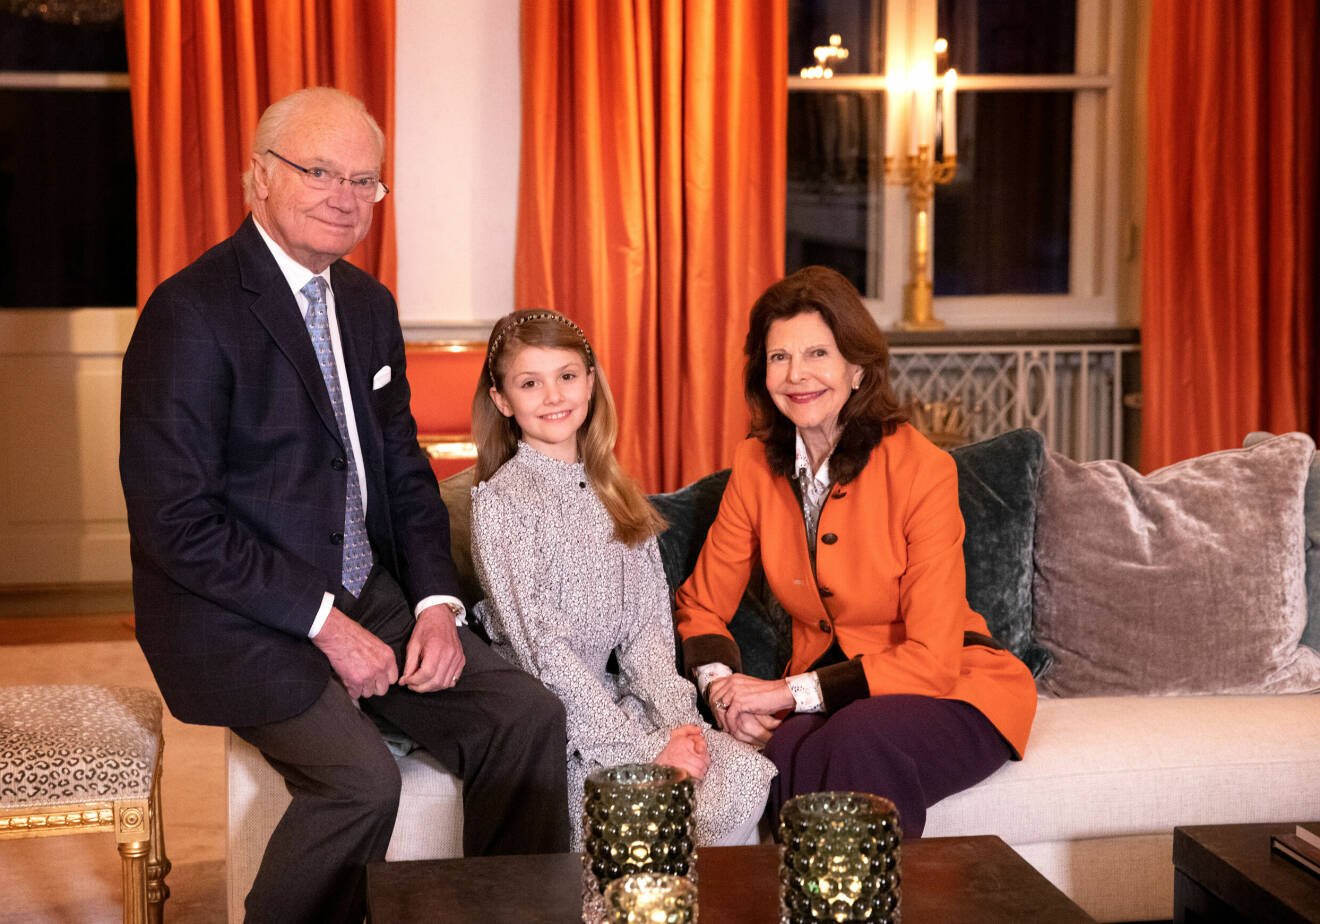 Kungaparet gratulerar äldsta barnbarnet prinsessan Estelle på hennes 10-årsdagen vid ett firande på Haga slott. Gardinerna i bakgrunden skvallrar om att bilden togs i stora salongen.